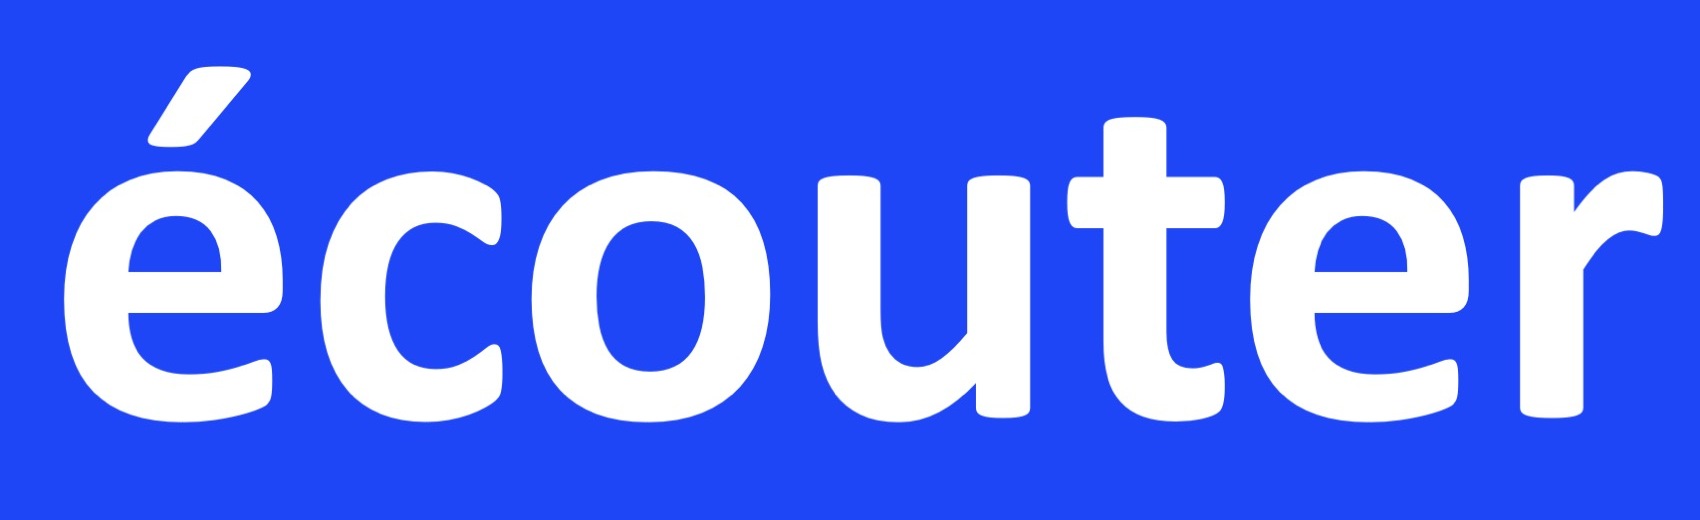 Ecouter logo